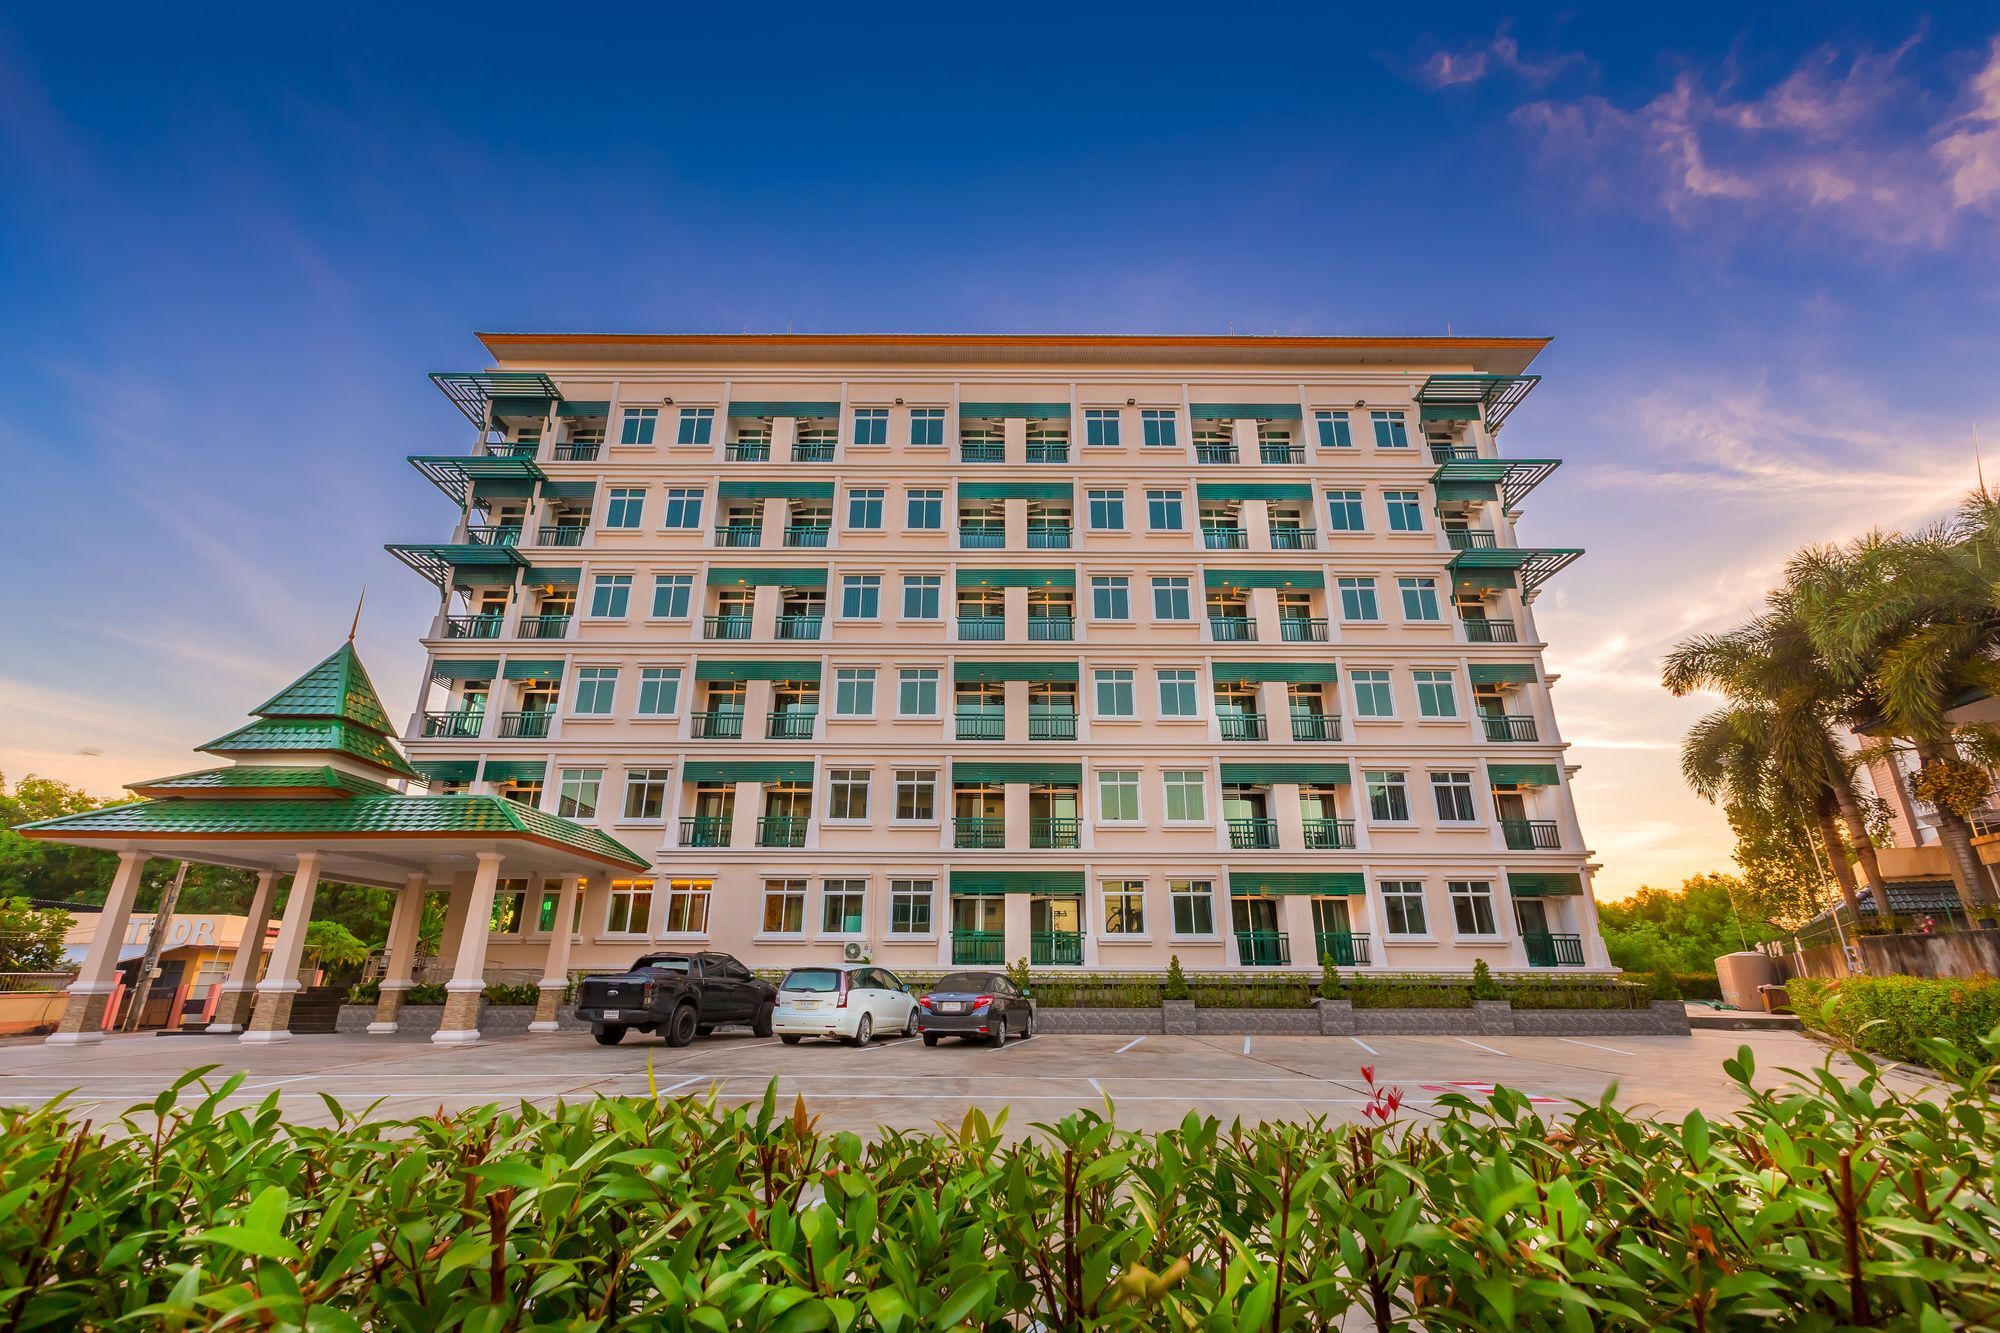 Evergreen Suite Hotel Surat Thani Exterior foto